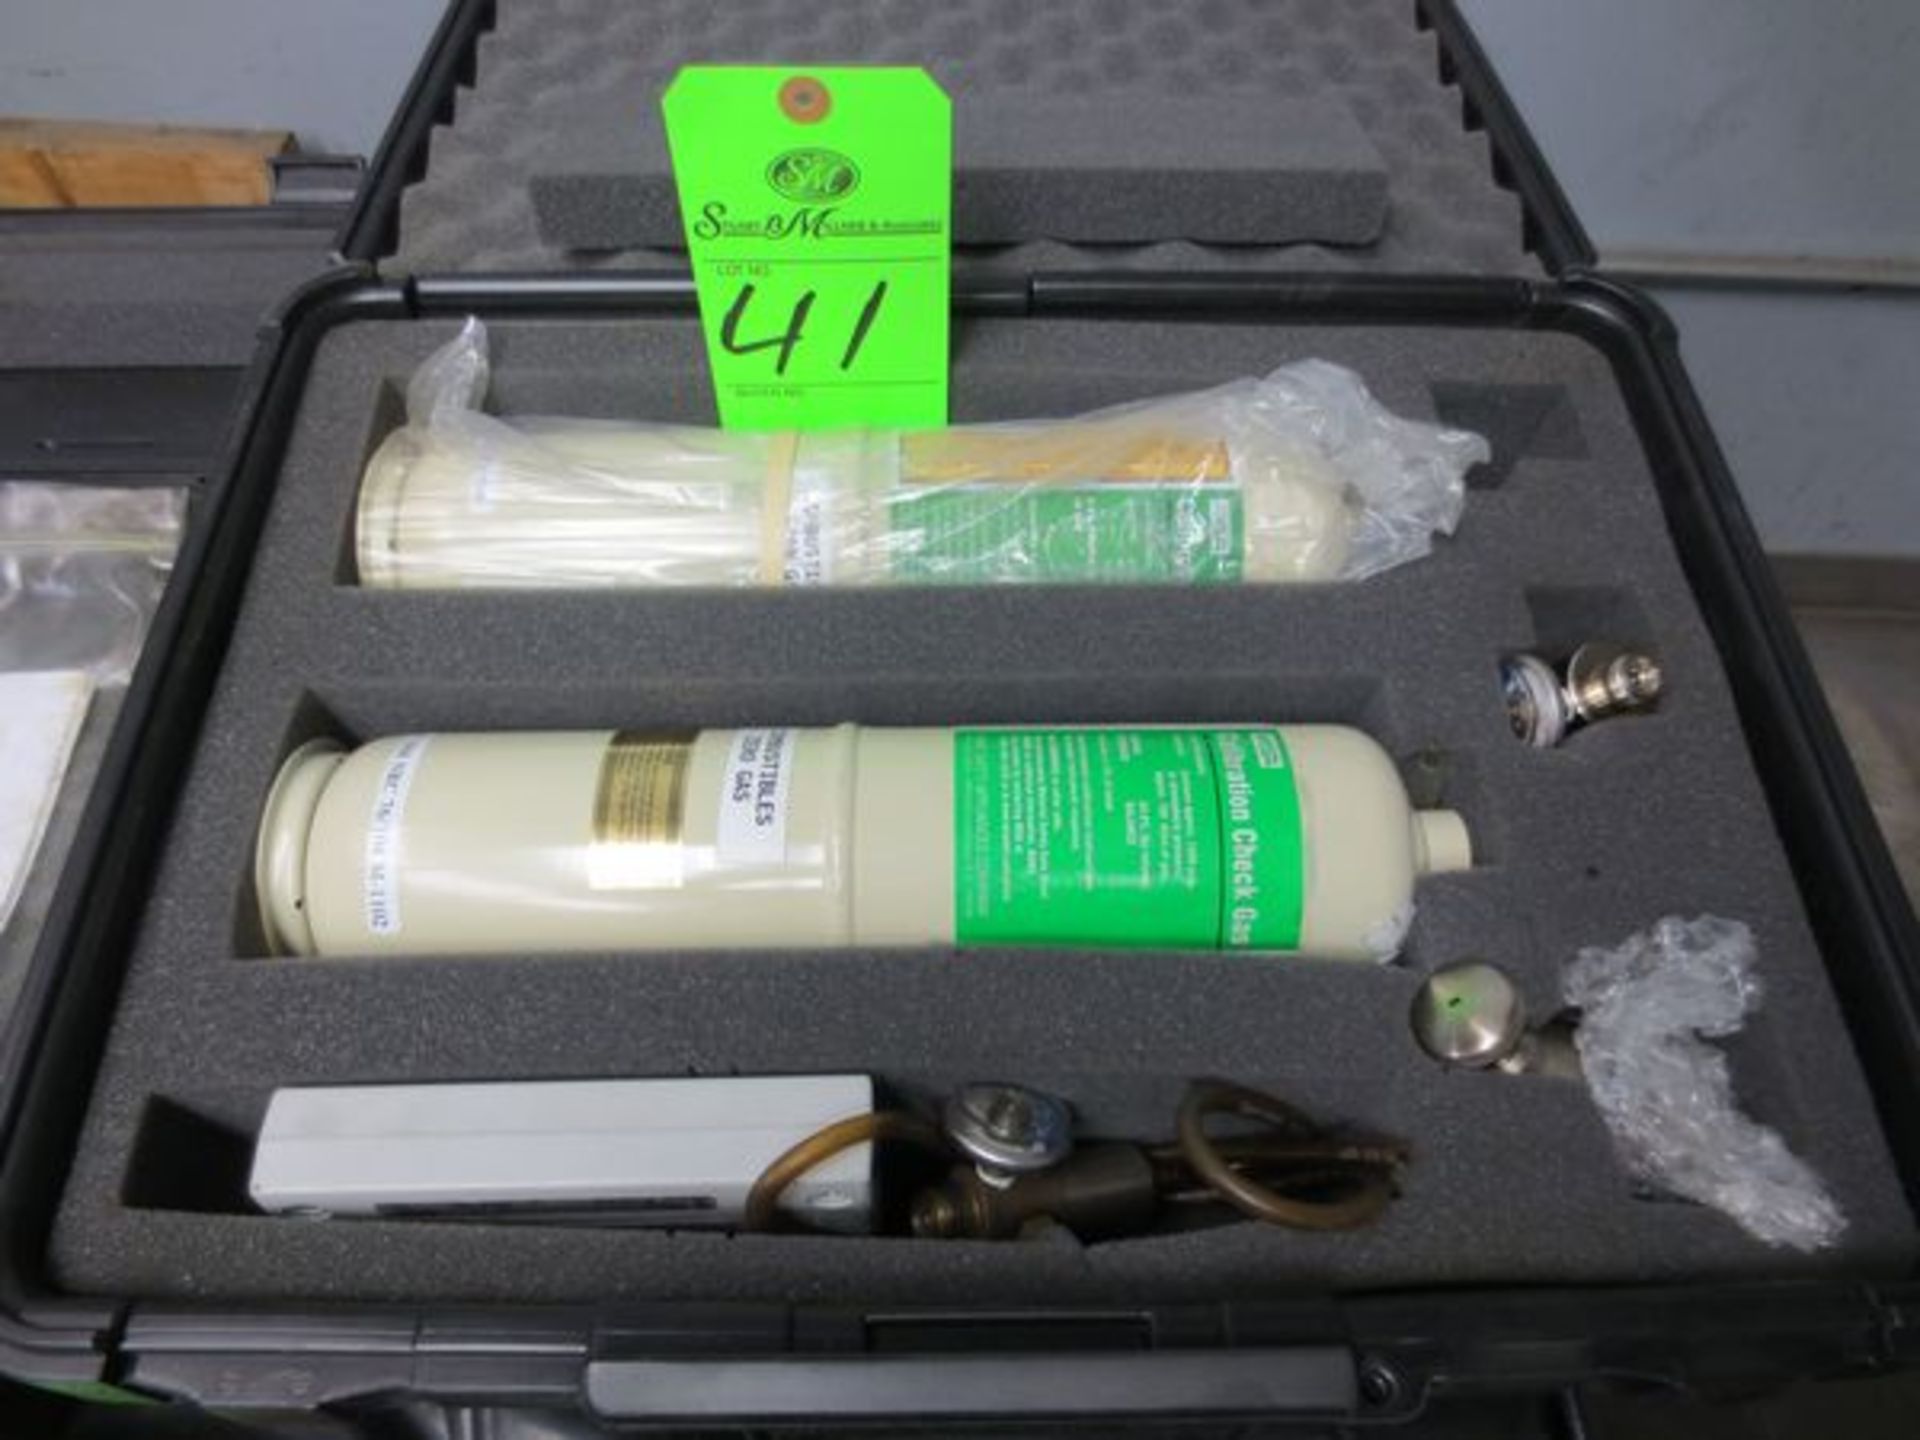 MSA calibration check gas kit - Image 2 of 2